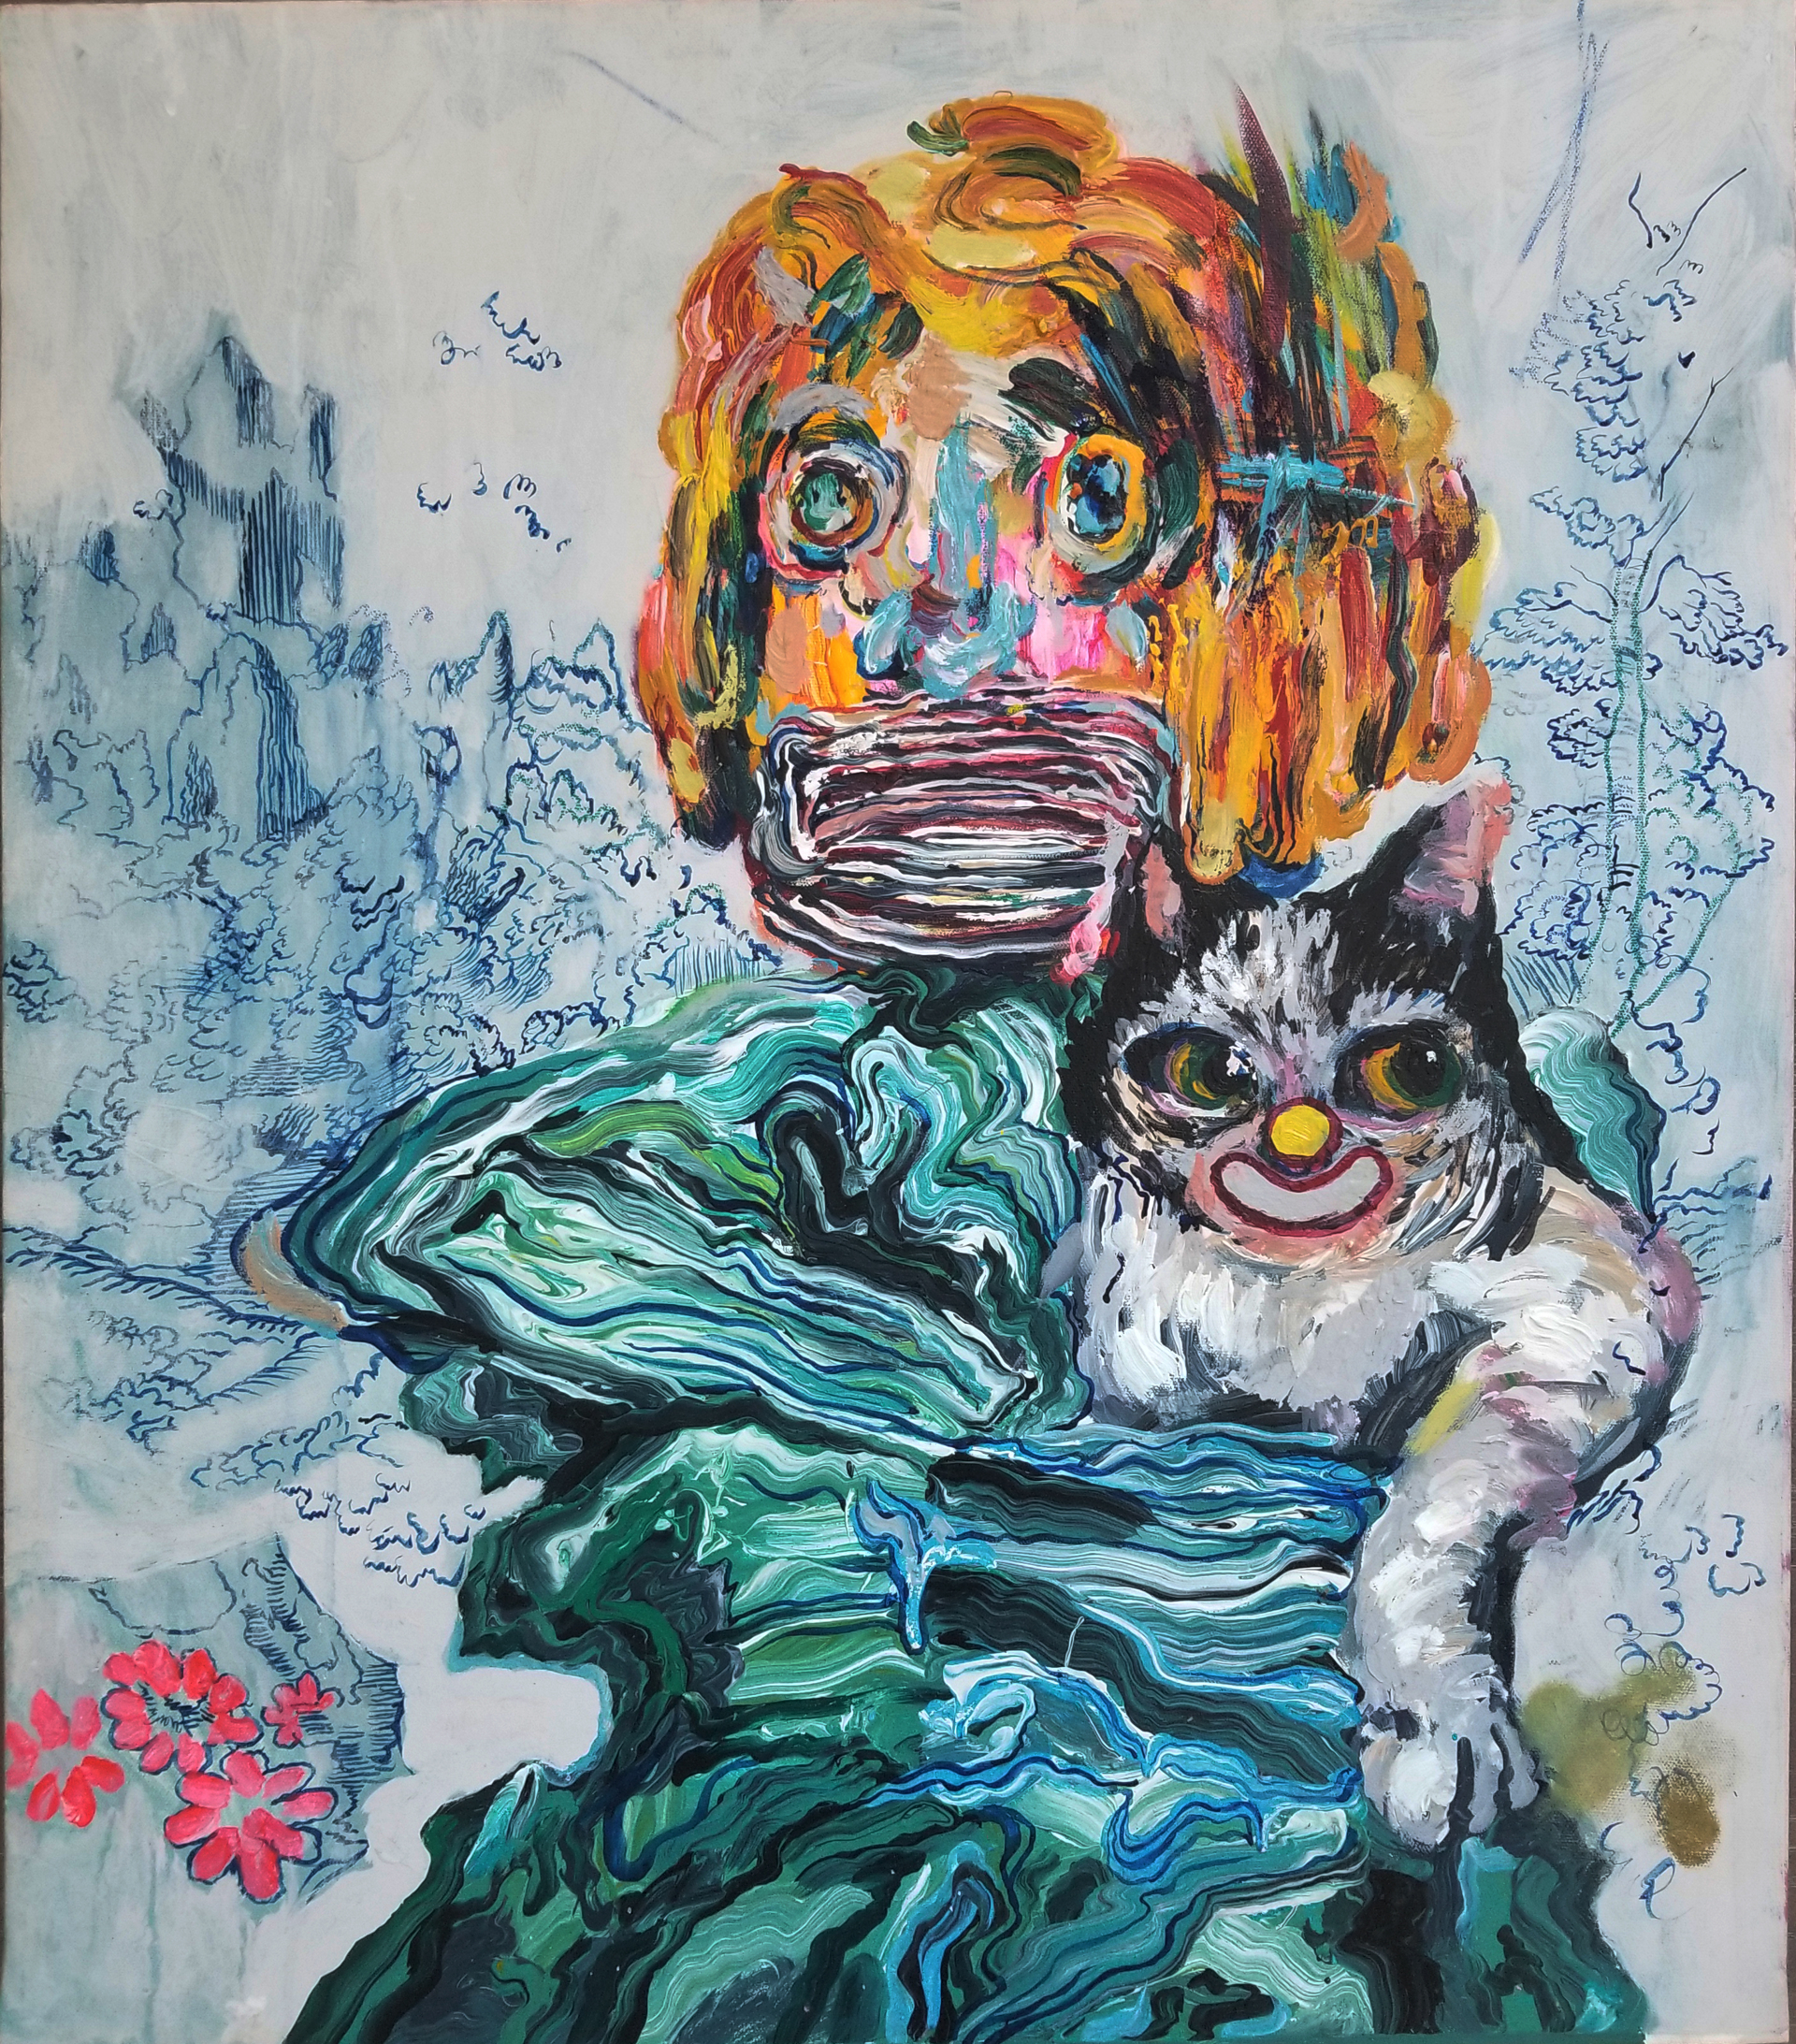 Boy with a Cat by Ken Gun Min